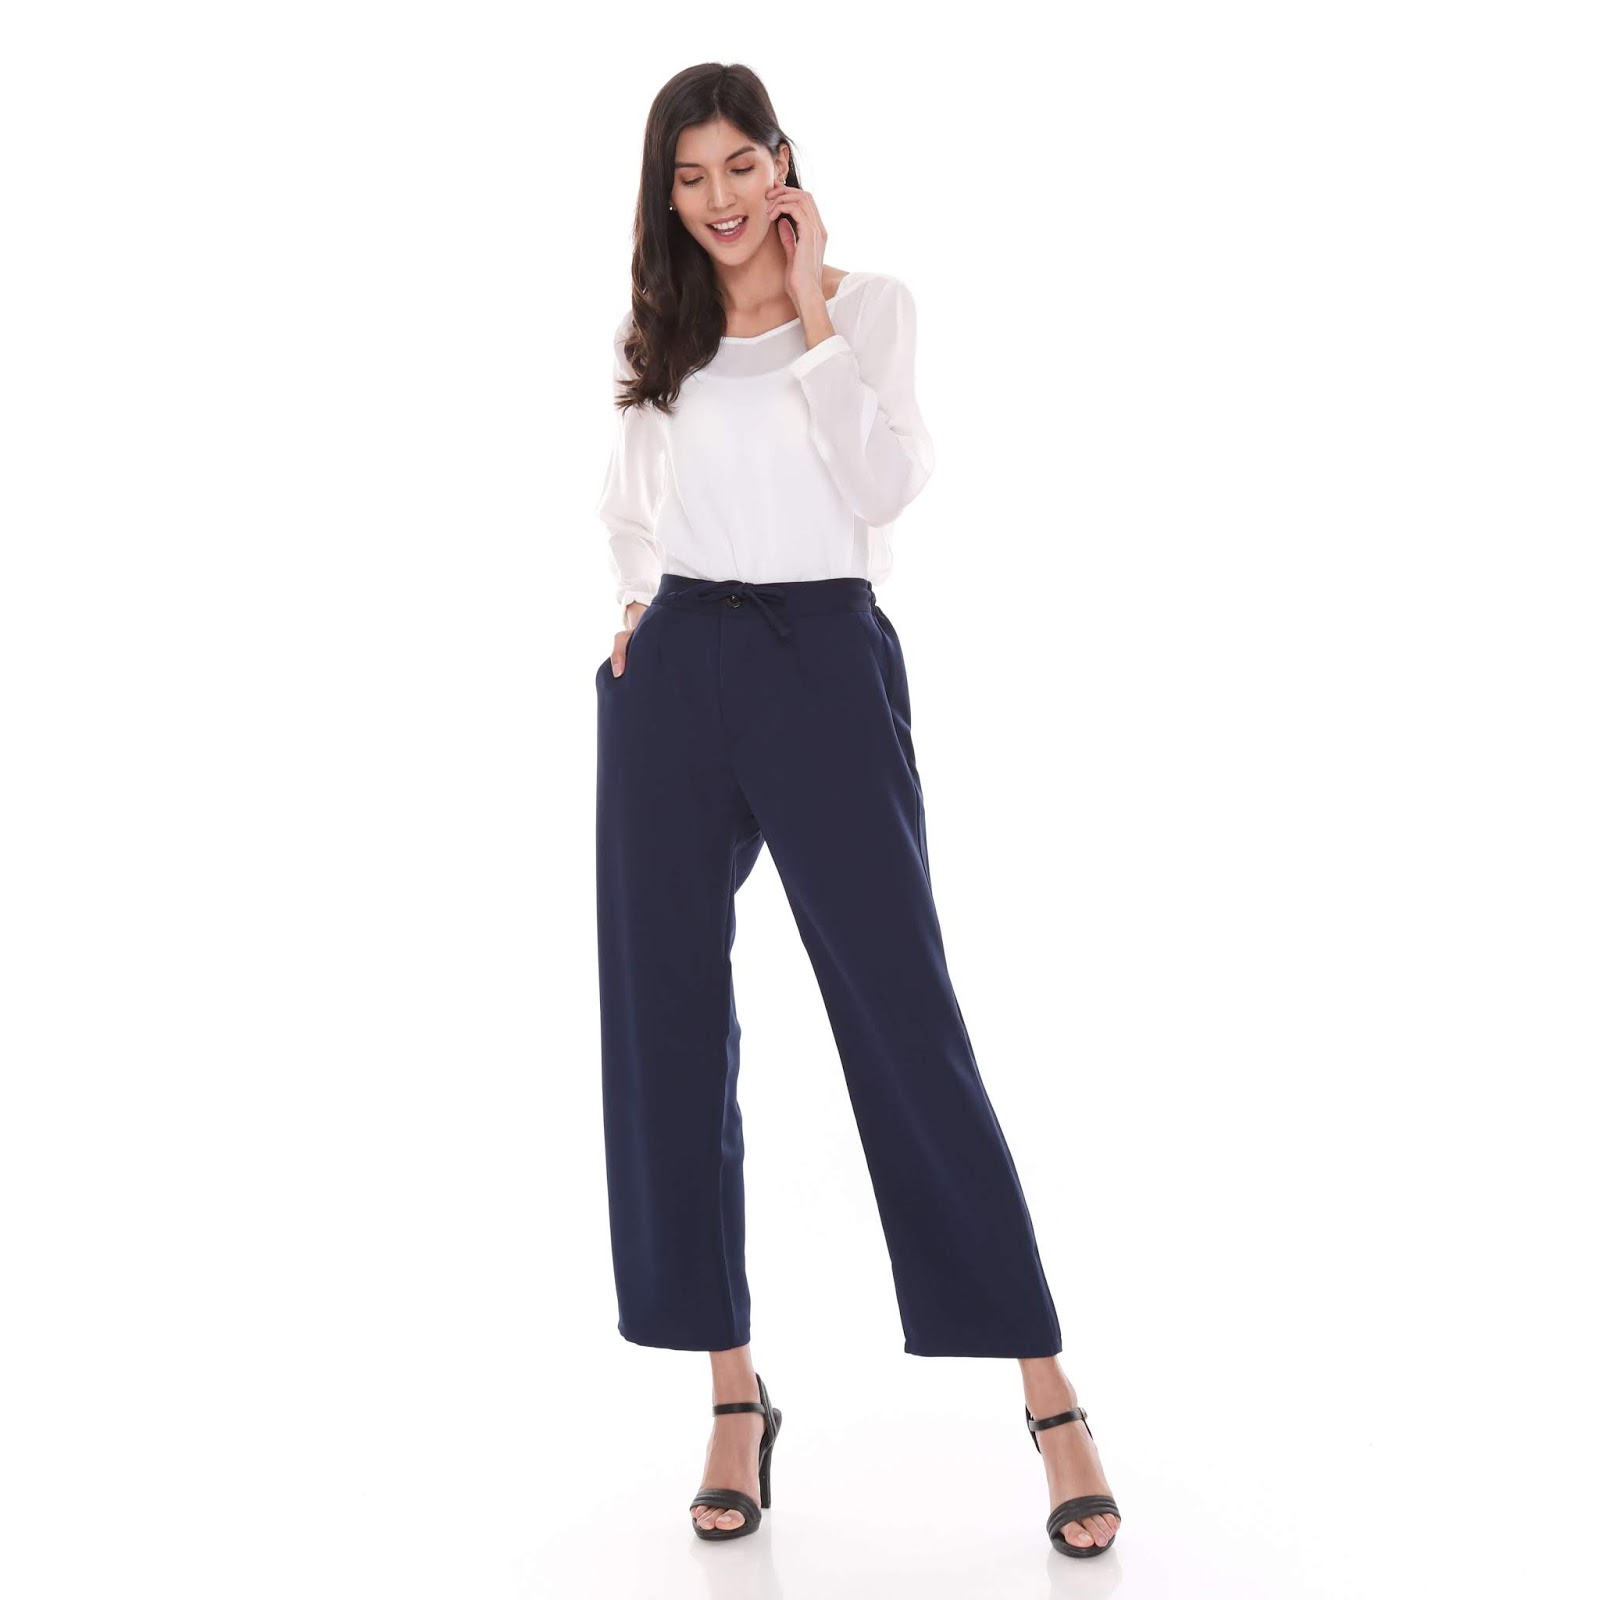  Celana  Panjang Wanita  Trendy Dari Bendostore Pro 151 Links